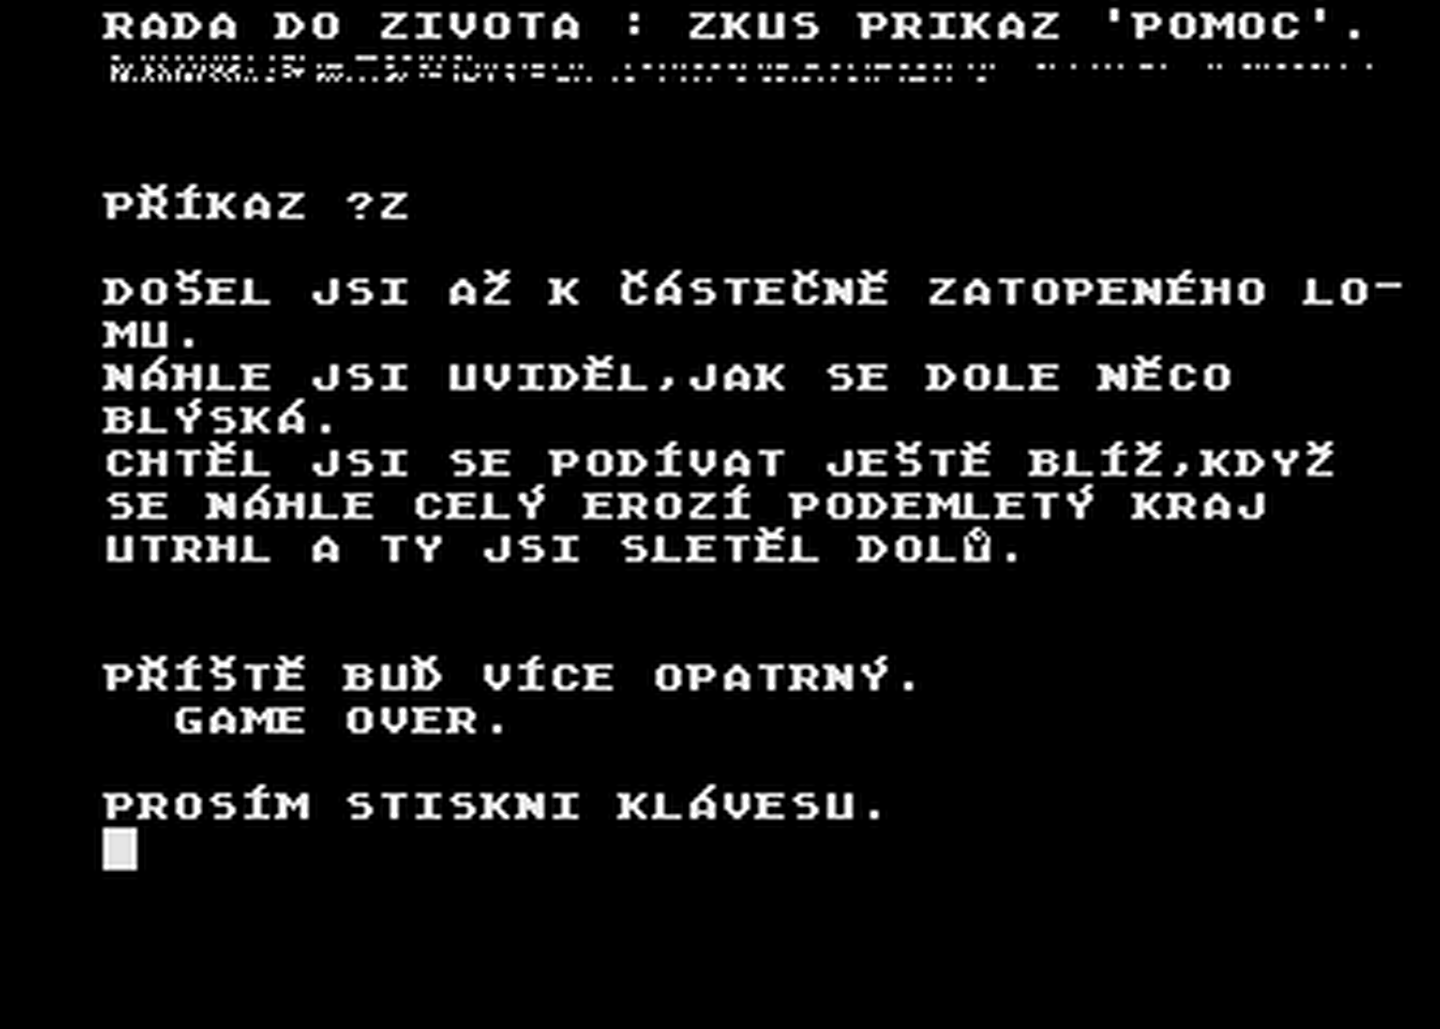 Atari GameBase Pomsta_Bile_Diskety PMSoft 1991